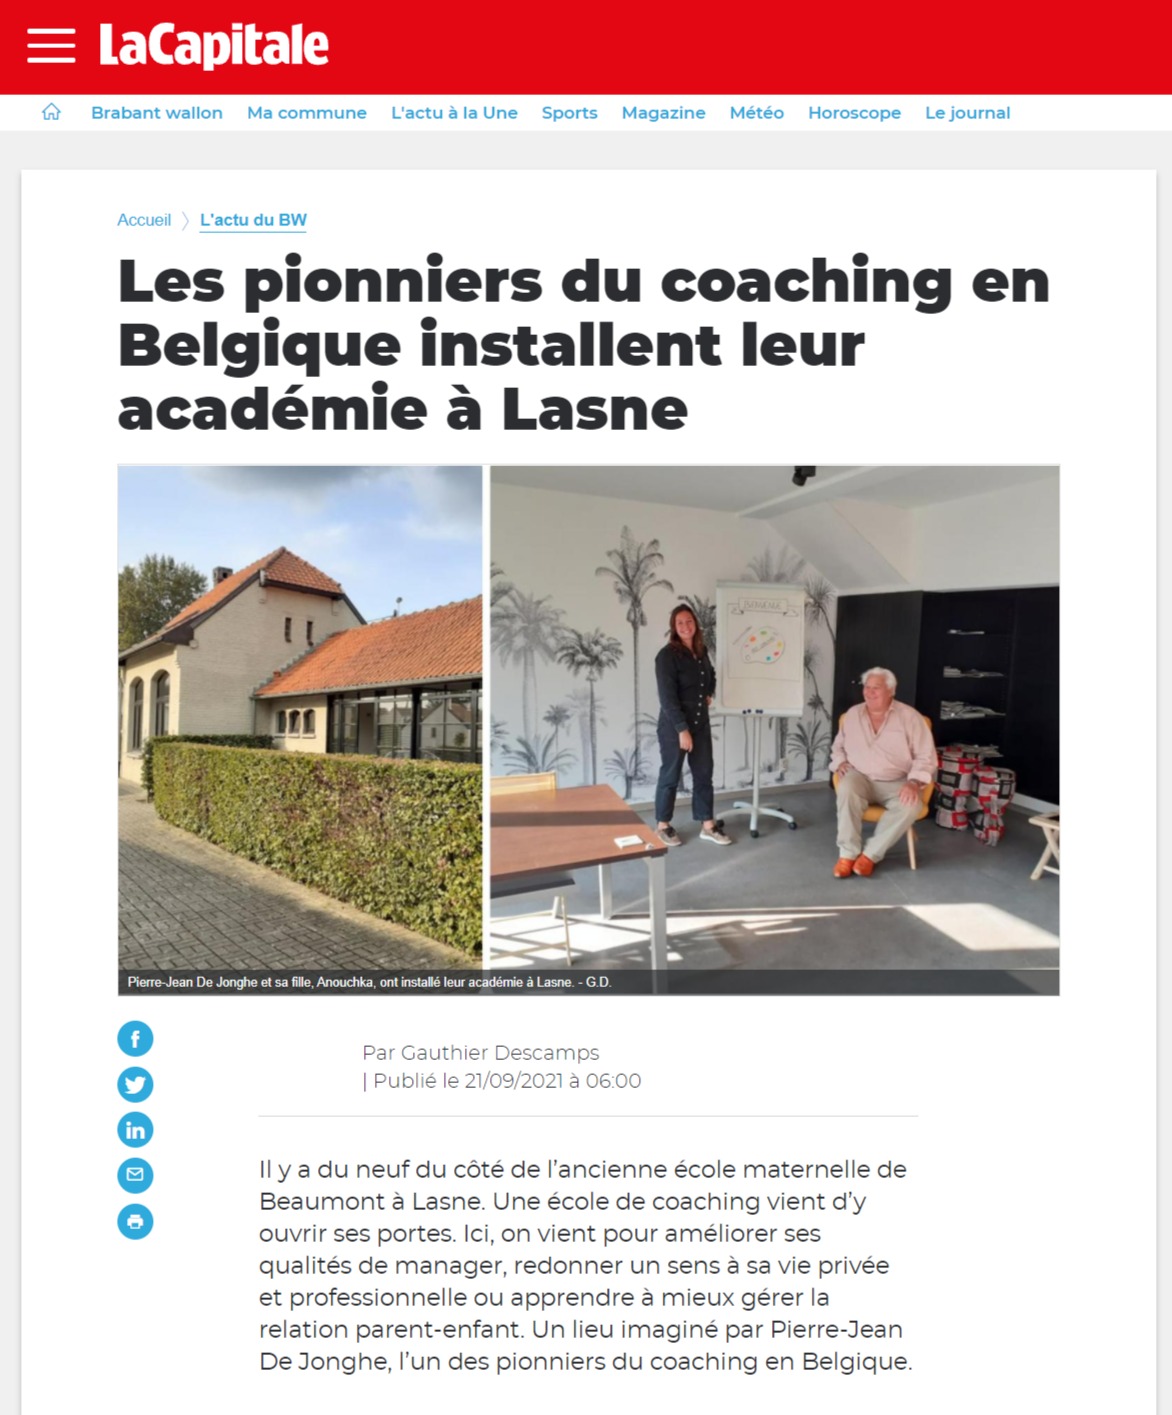 Les pionniers du coaching en Belgique installent leur académie à Lasne